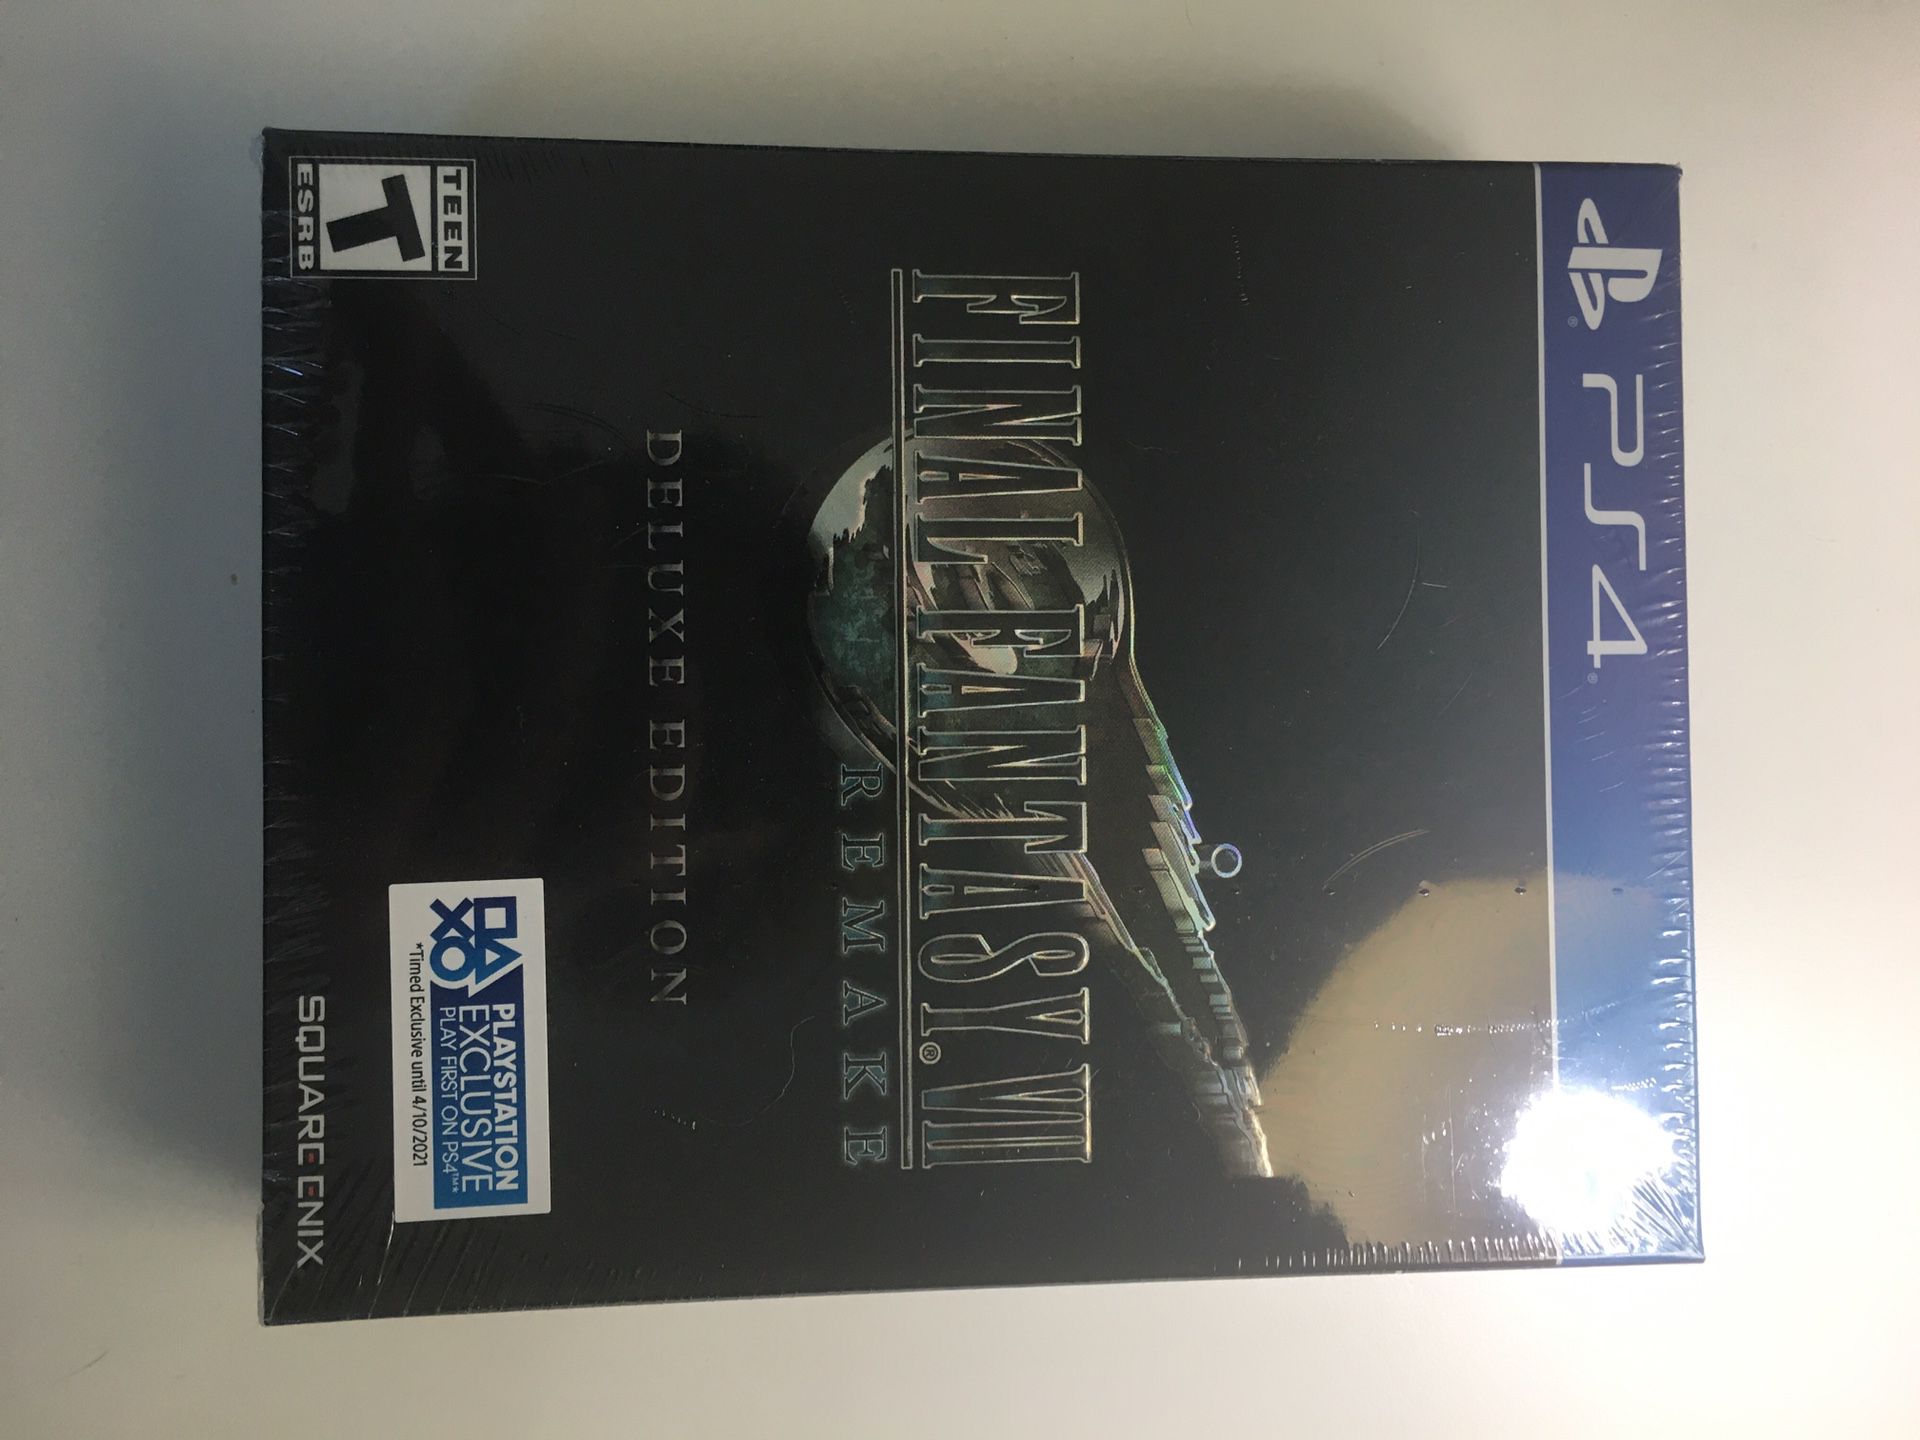 Final Fantasy 7 deluxe edition